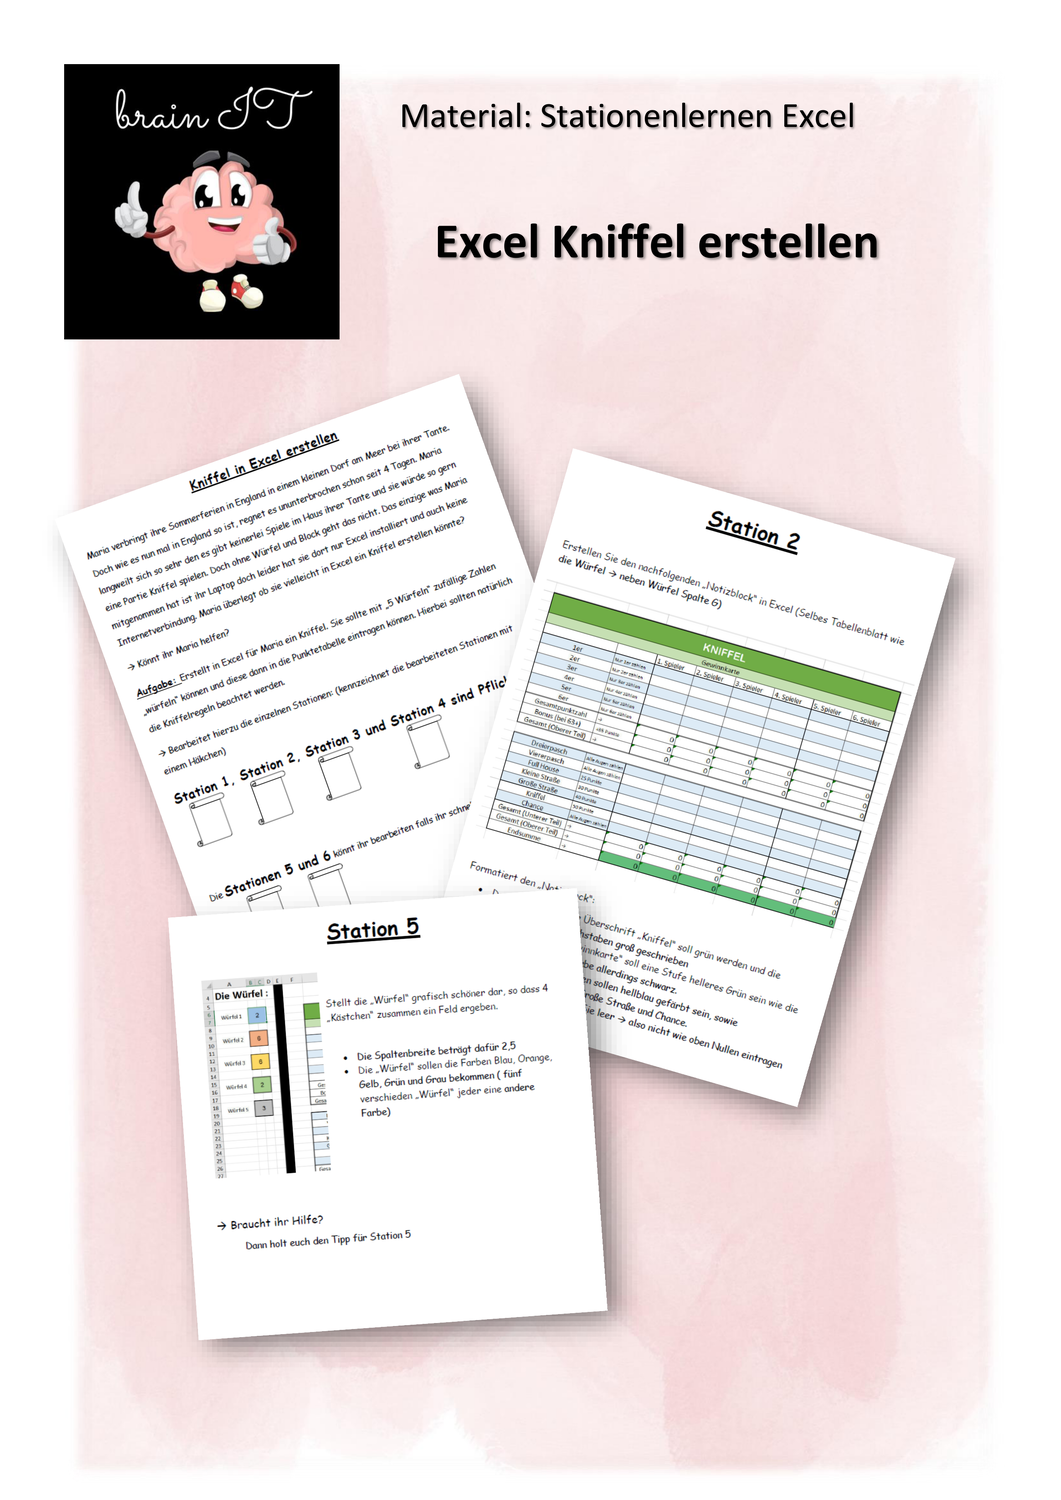 Excel Kniffel Erstellen Stationen Unterrichtsmaterial In Den Fachern Informatik Itg Technik Bs In 2020 Unterrichtsmaterial Informatik Lernen